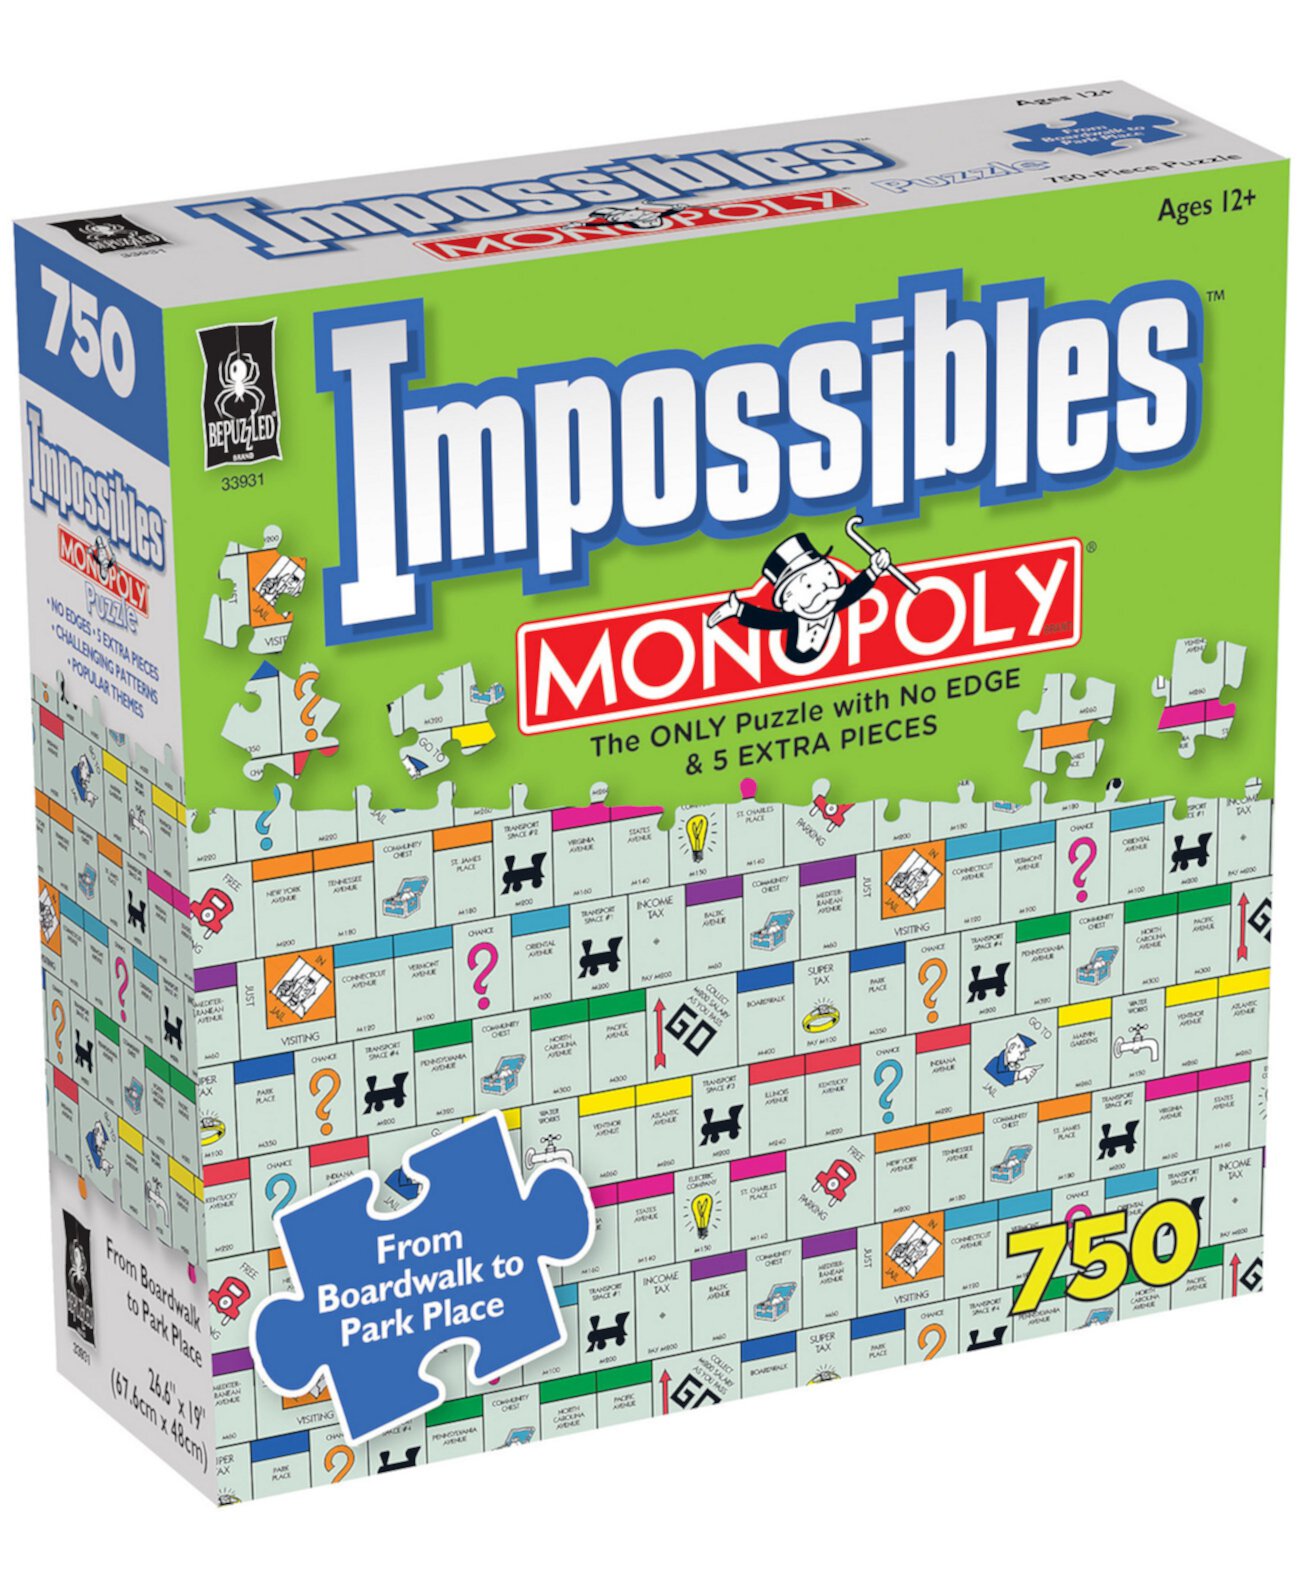 Набор пазлов Hasbro Monopoly Impossible, 750 деталей BePuzzled